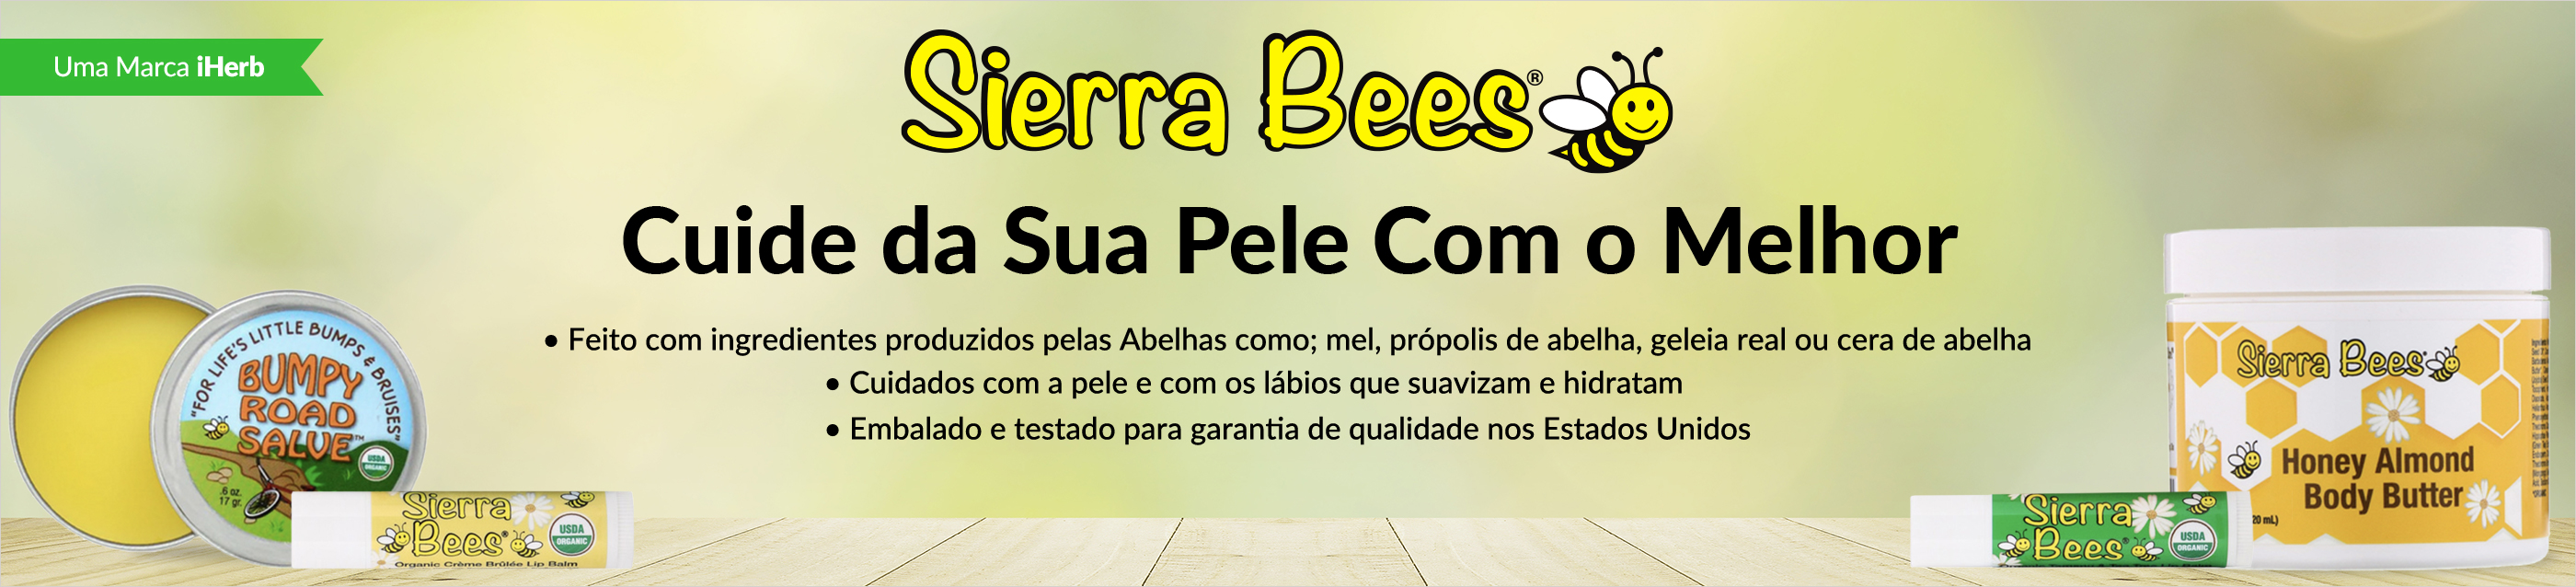 Sierra Bees